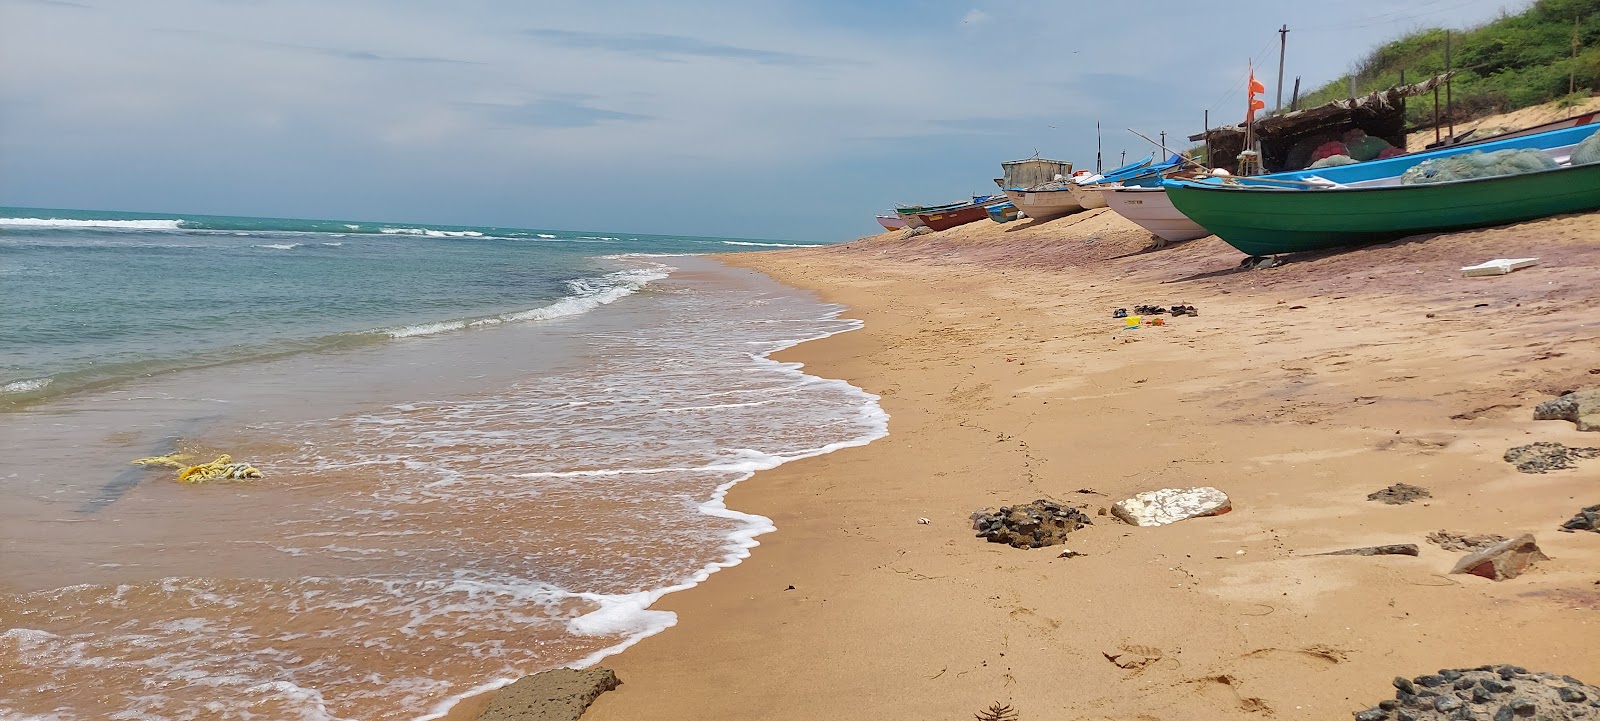 Valokuva Kooduthalai beachista. pinnalla kirkas hiekka:n kanssa